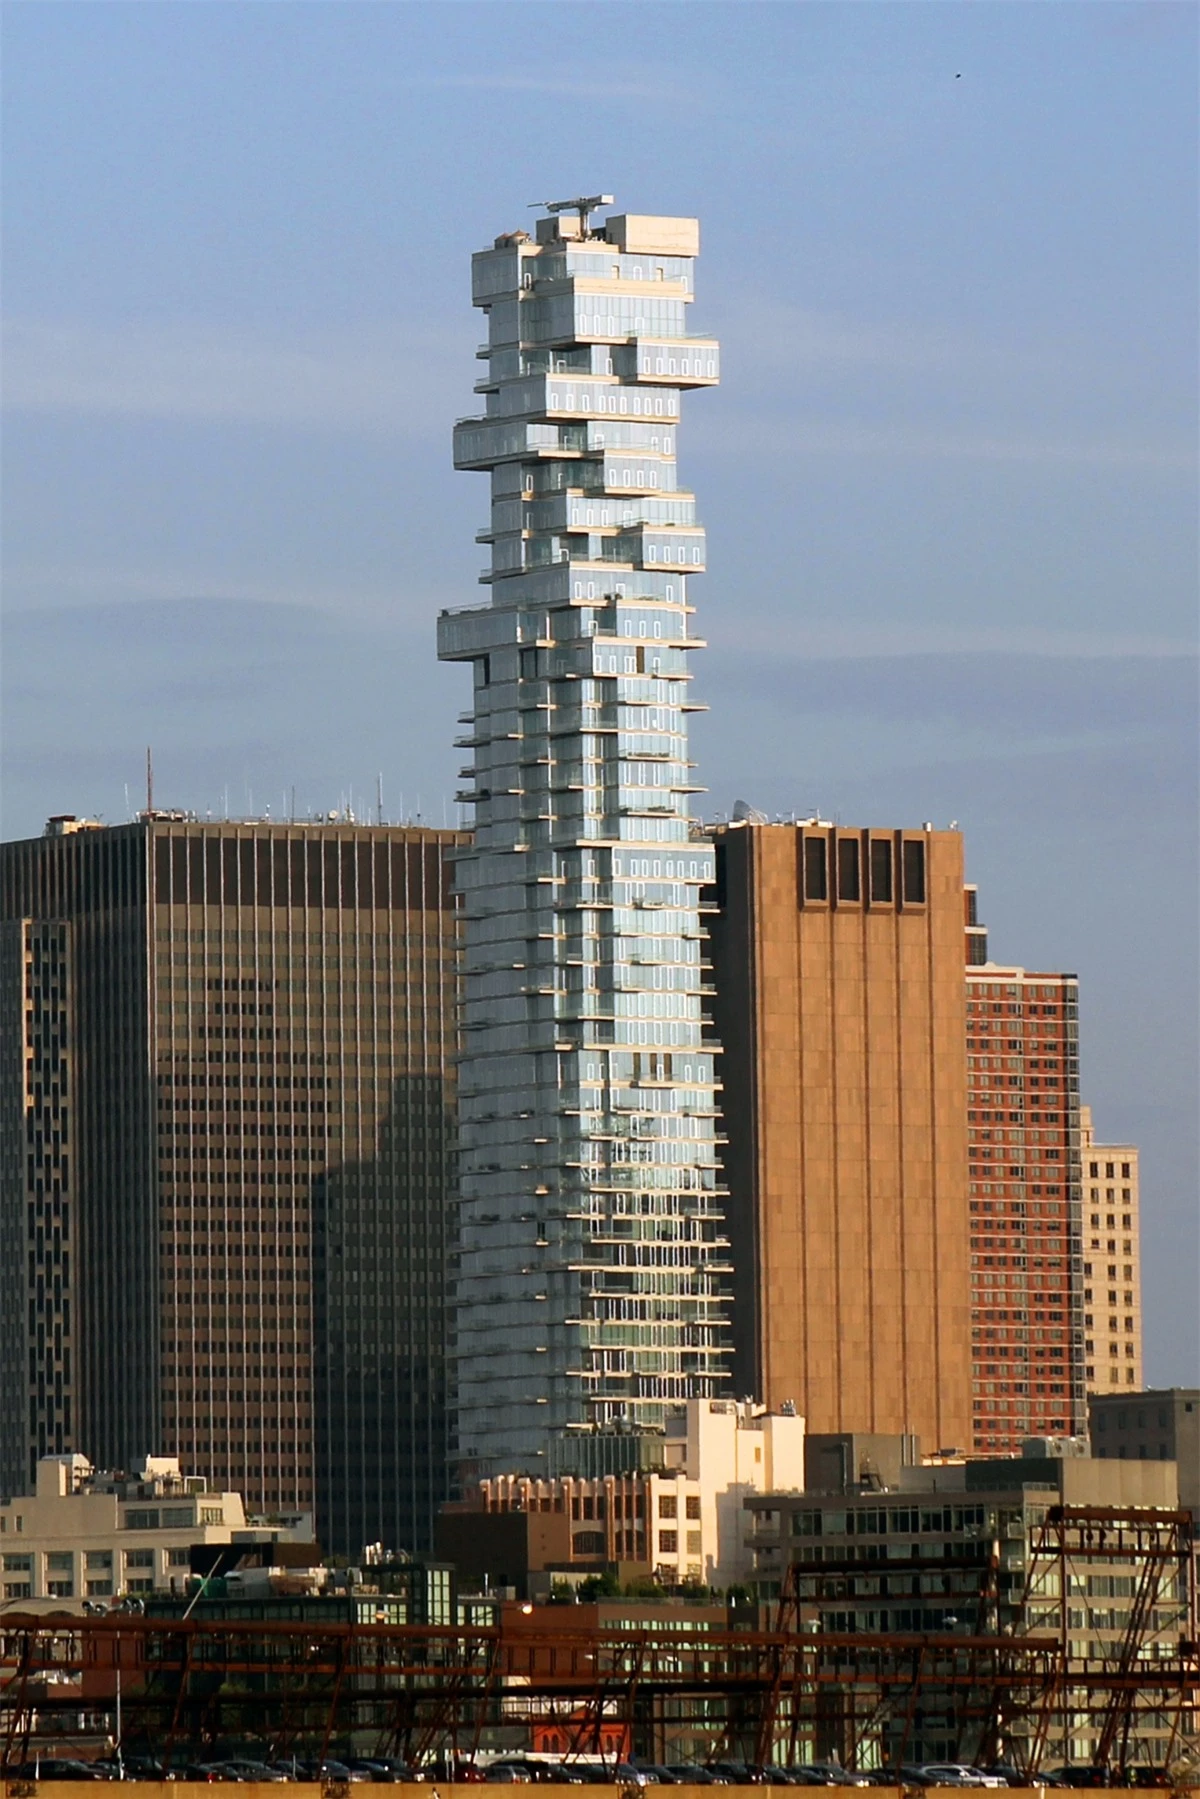 Tòa nhà chọc trời này ở New York (ở Mỹ) trông giống như một trò chơi rút gỗ khổng lồ.